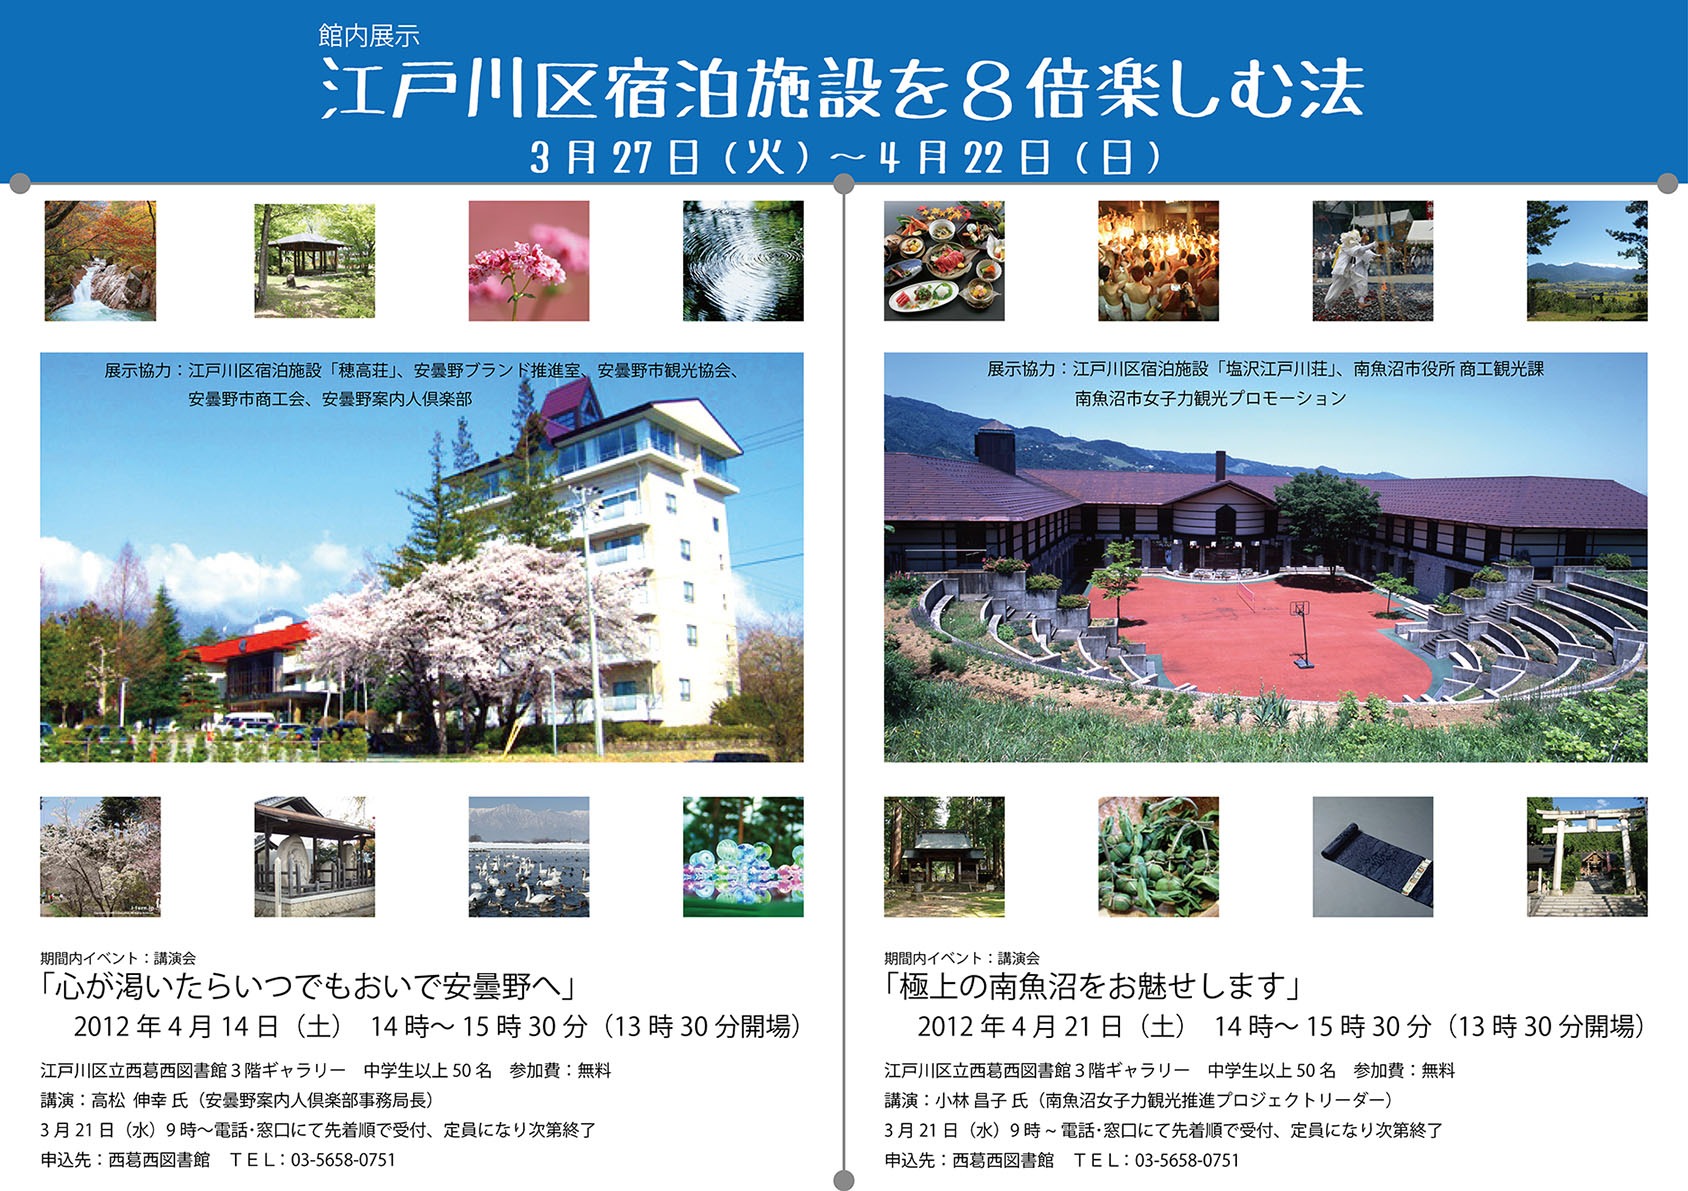 イベントポスター「江戸川区宿泊施設を8倍楽しむ法」